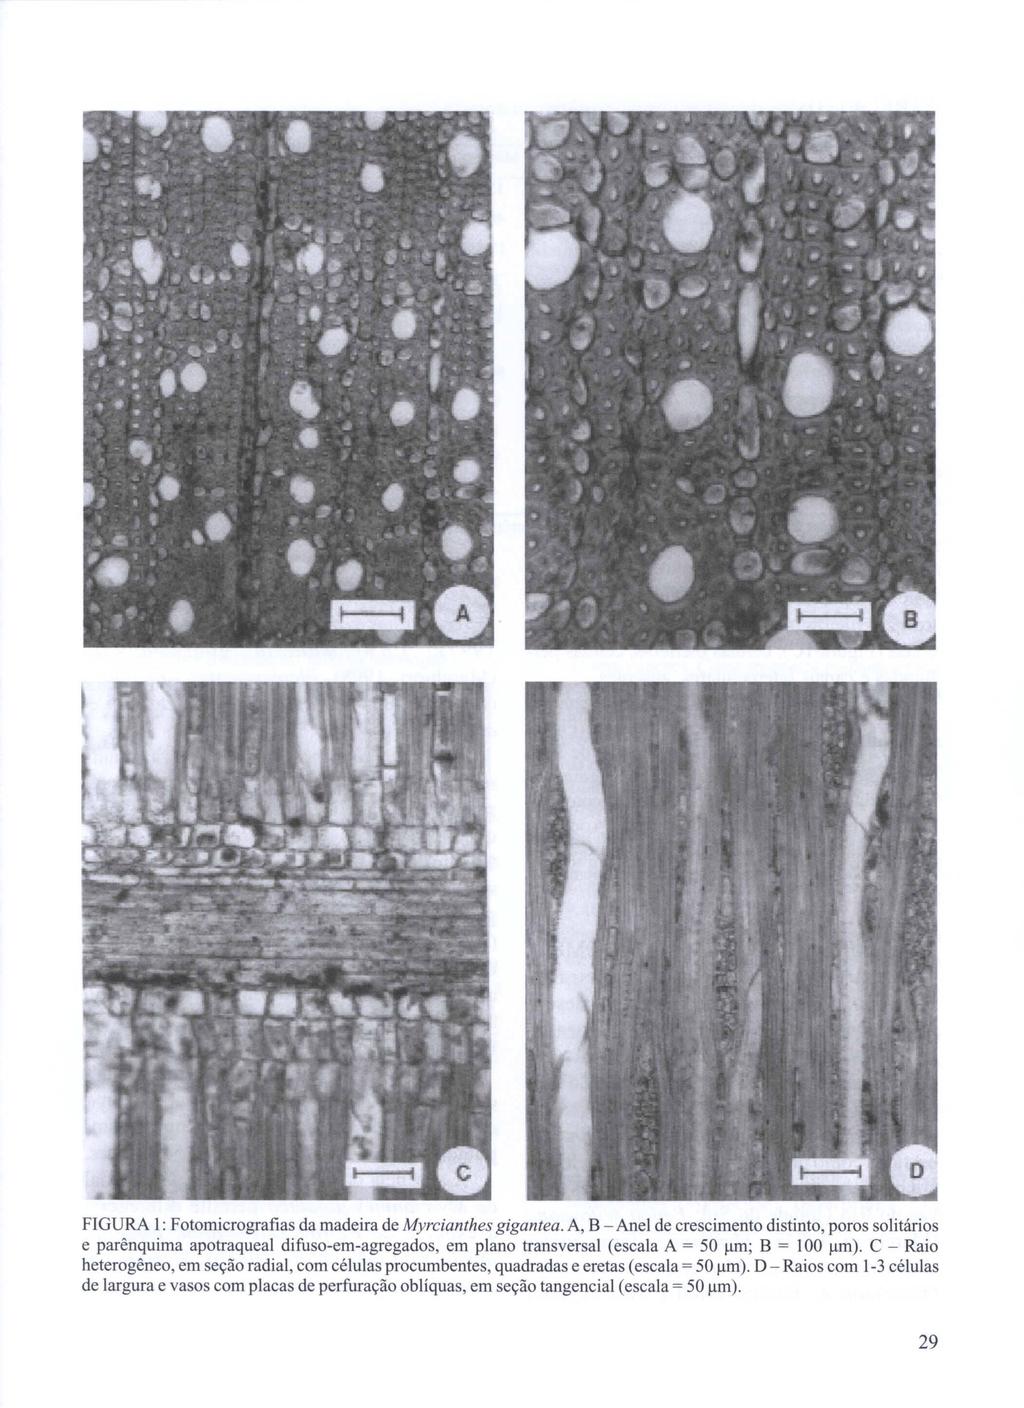 FIGURA I: Fotomicrografias da madeira de Myrcianthes gigantea.